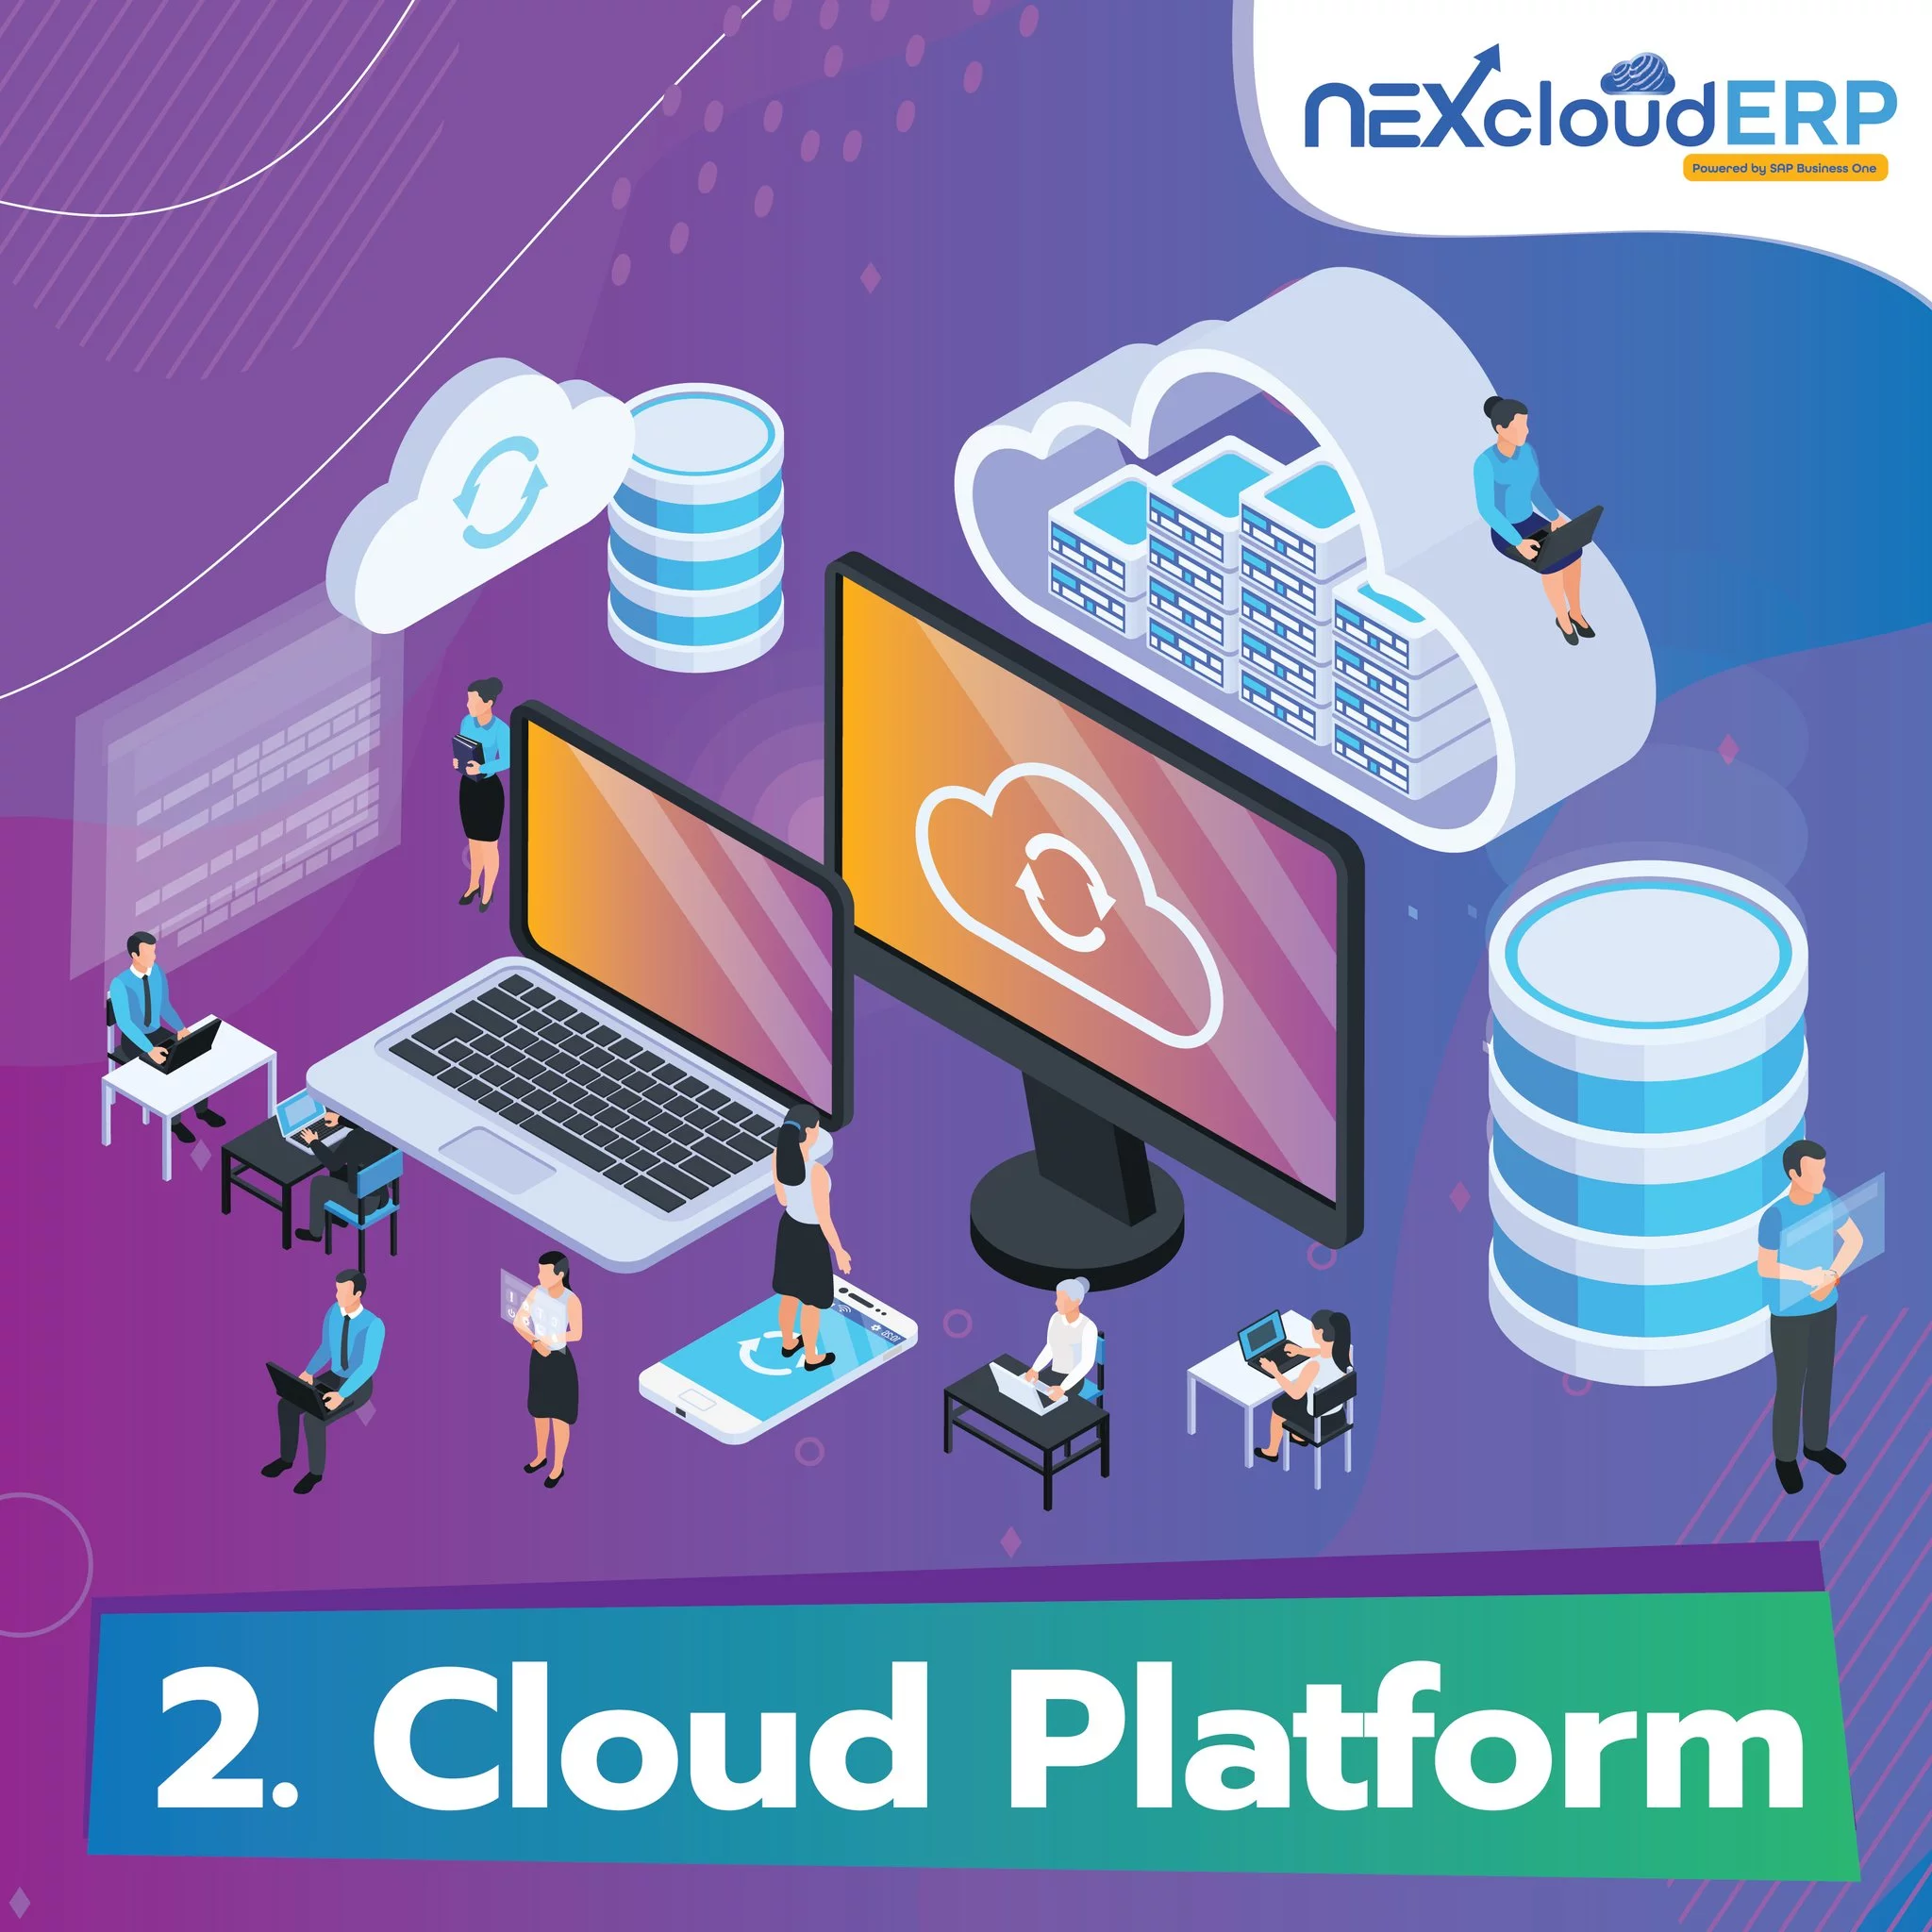 รู้จัก 5 เทคโนโลยี กลยุทธ์ธุรกิจ SMEs ติดสปีดให้นำหน้าคู่แข่ง - Cloud - NEXcloud ERP 2